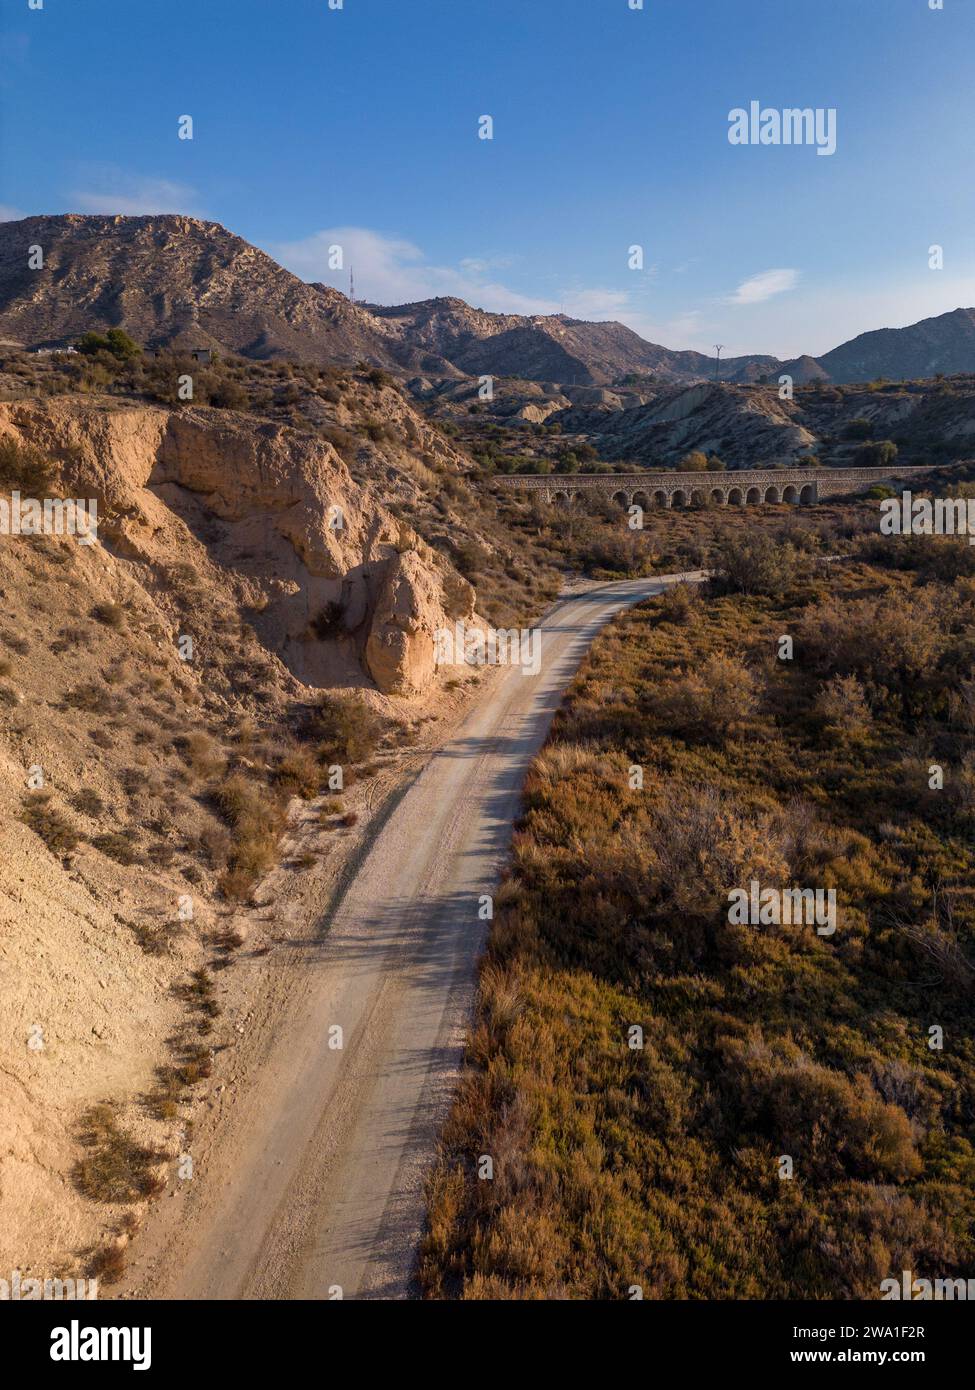 Camino de tierra en paisaje desierto árido con acantilados distantes y luz solar de la mañana, Elche, provincia de Alicante, España - Foto de stock Foto de stock